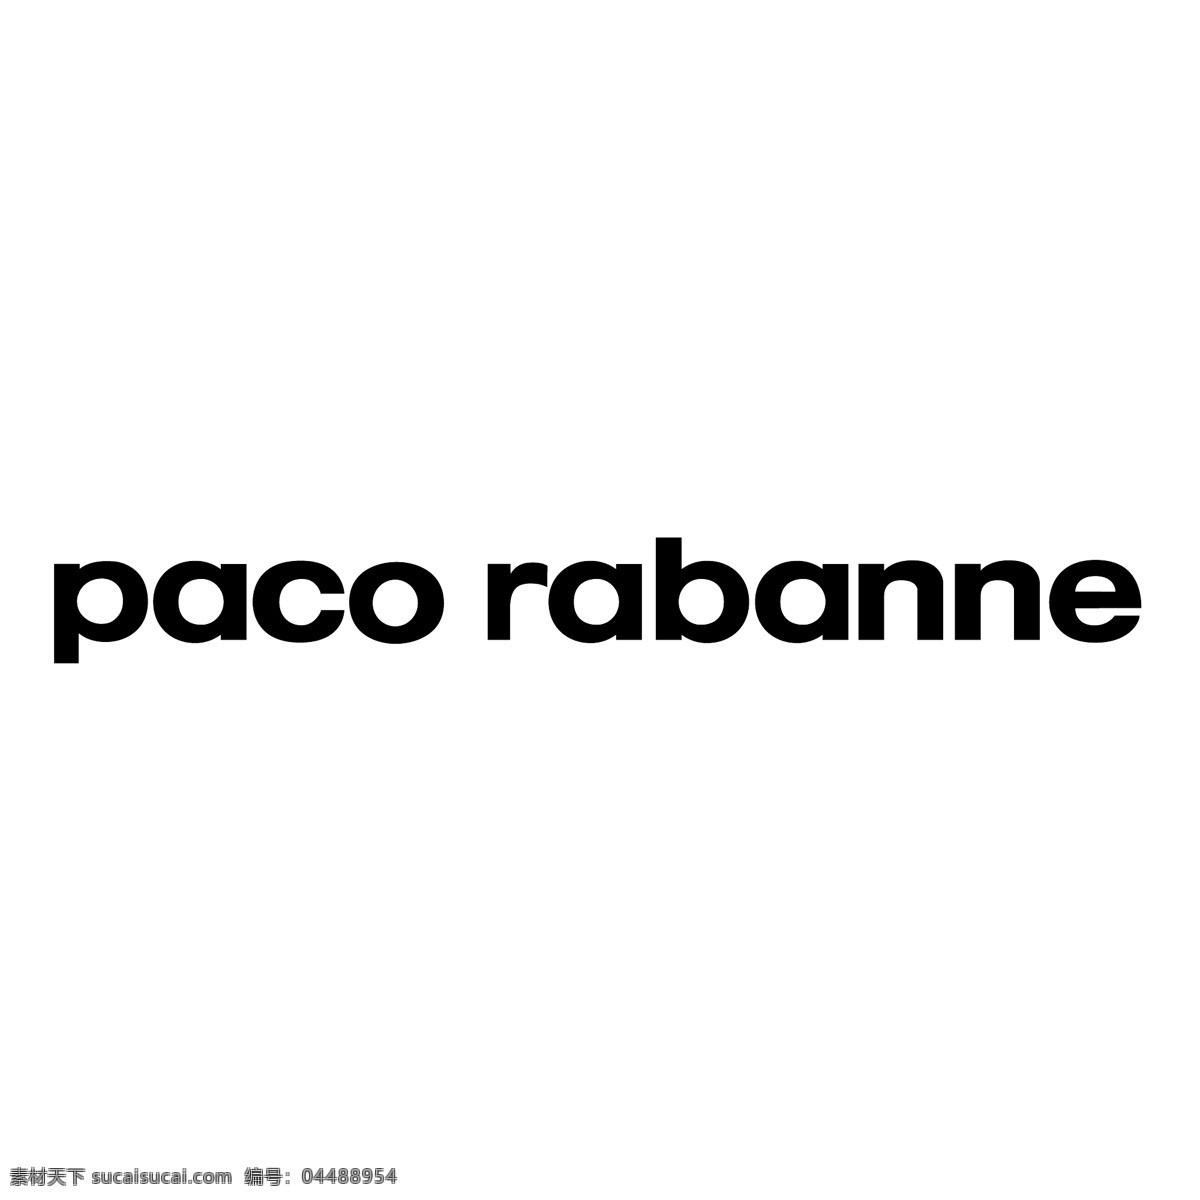 标志 帕 高 rabanne 帕科 免费logo paco 标识 标识paco 矢量paco 帕克 矢量 矢量帕克 向量 派克eps 标识帕克 矢量图 建筑家居